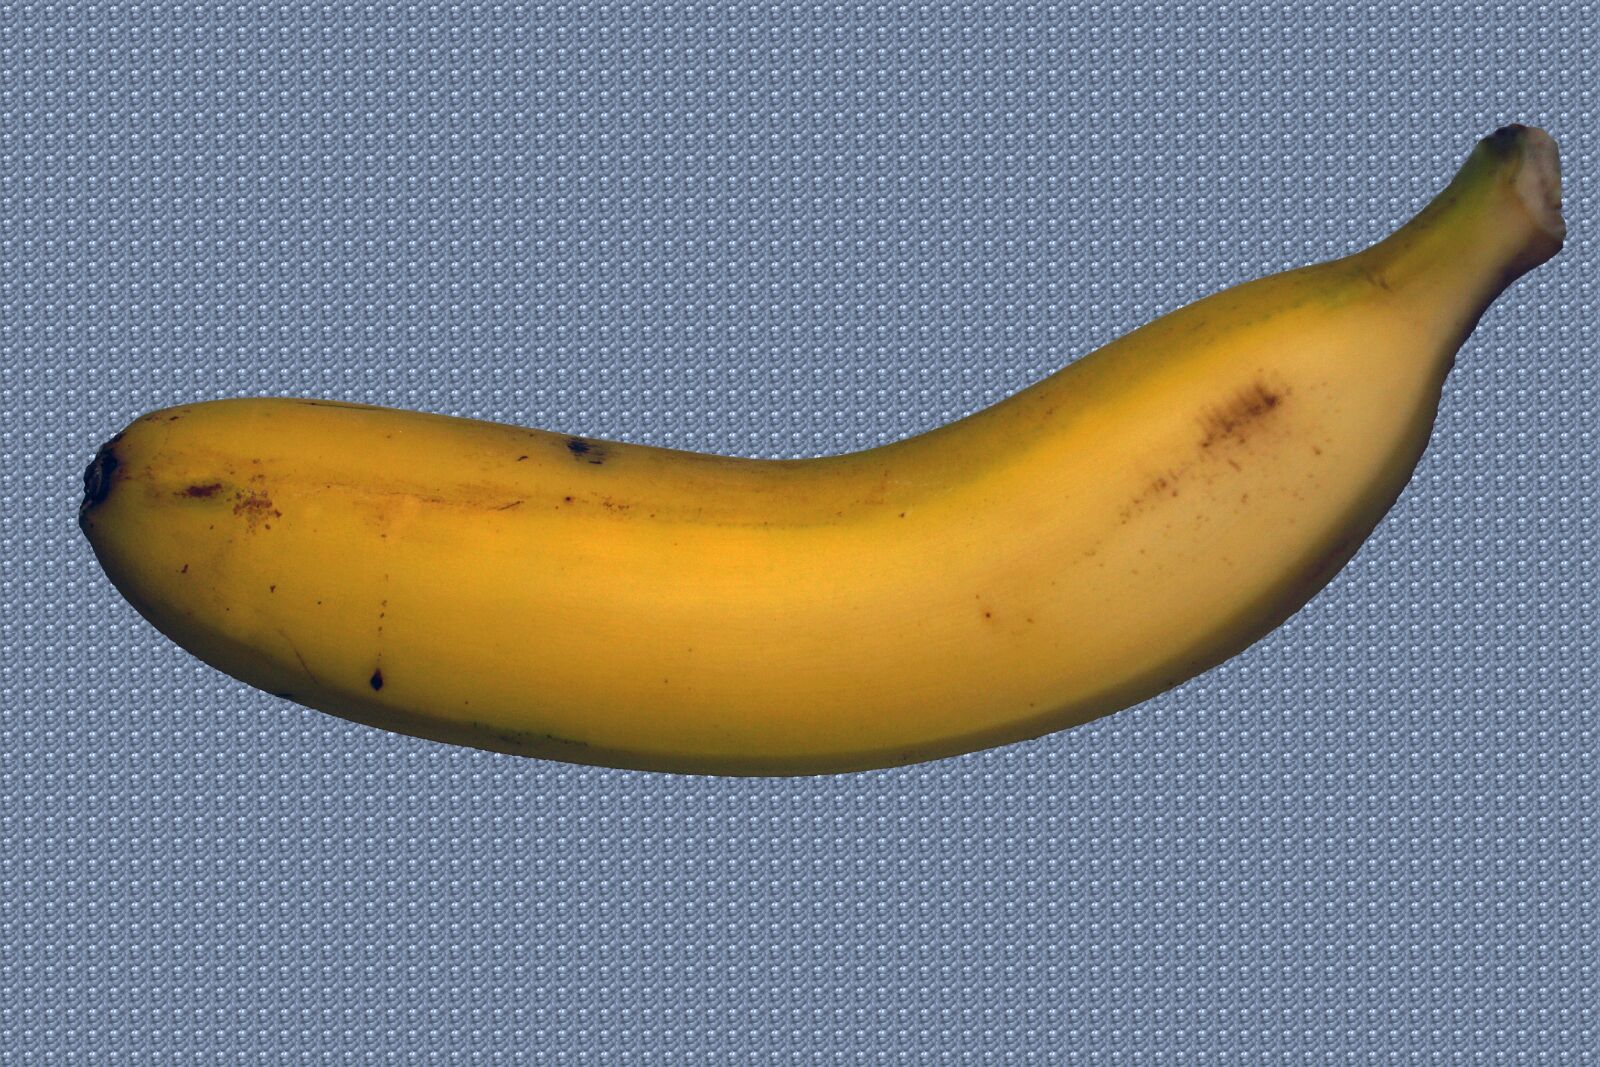 Sony DT 18-70mm F3.5-5.6 sample photo. Banana canary, banana, canary photography